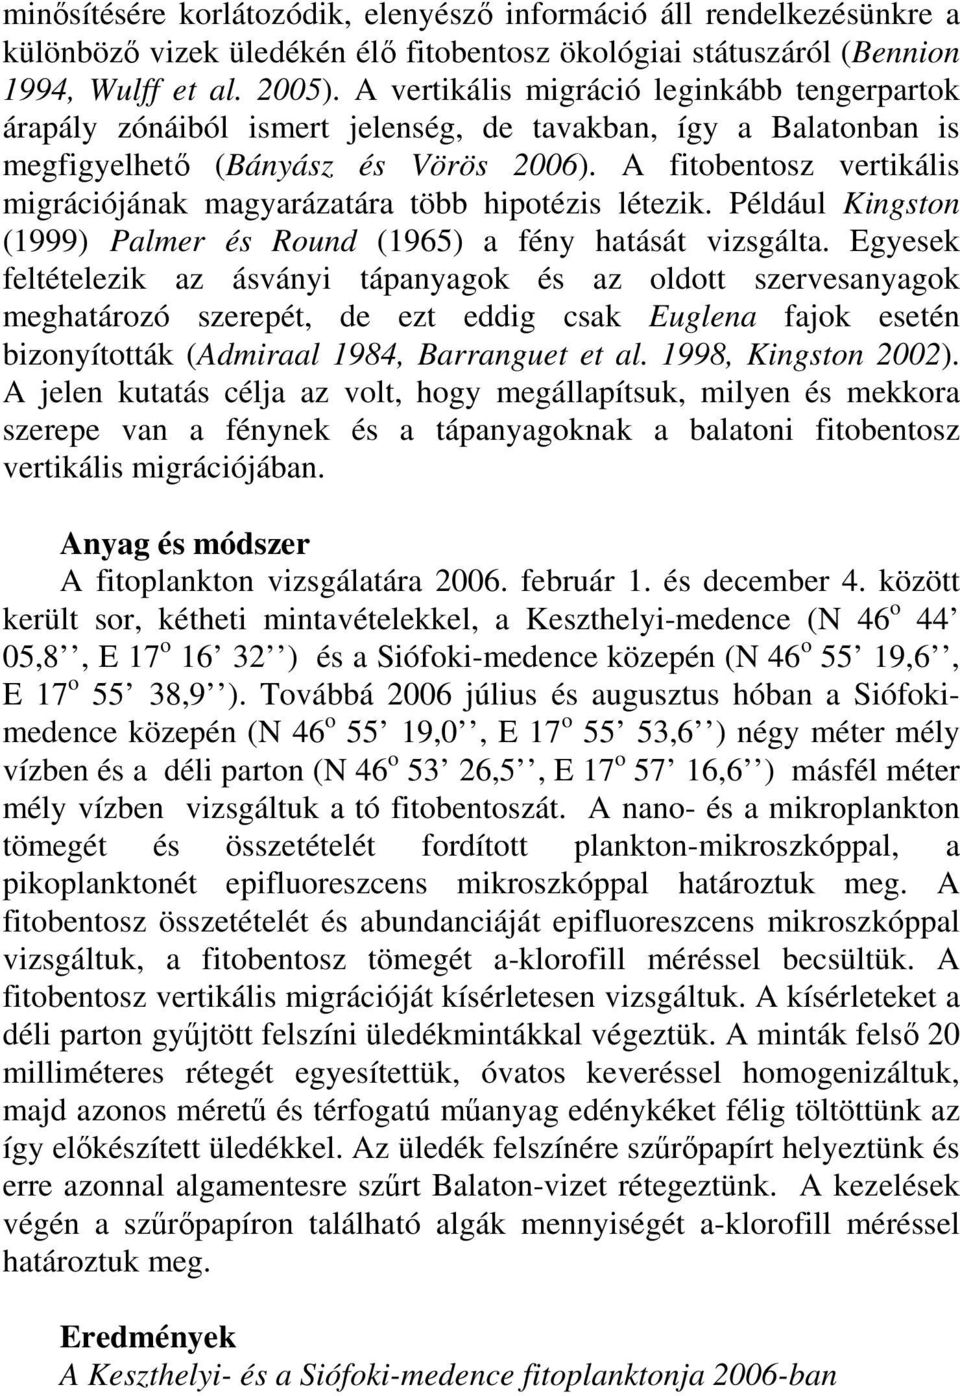 A fitobentosz vertikális migrációjának magyarázatára több hipotézis létezik. Például Kingston (1999) Palmer és Round (1965) a fény hatását vizsgálta.